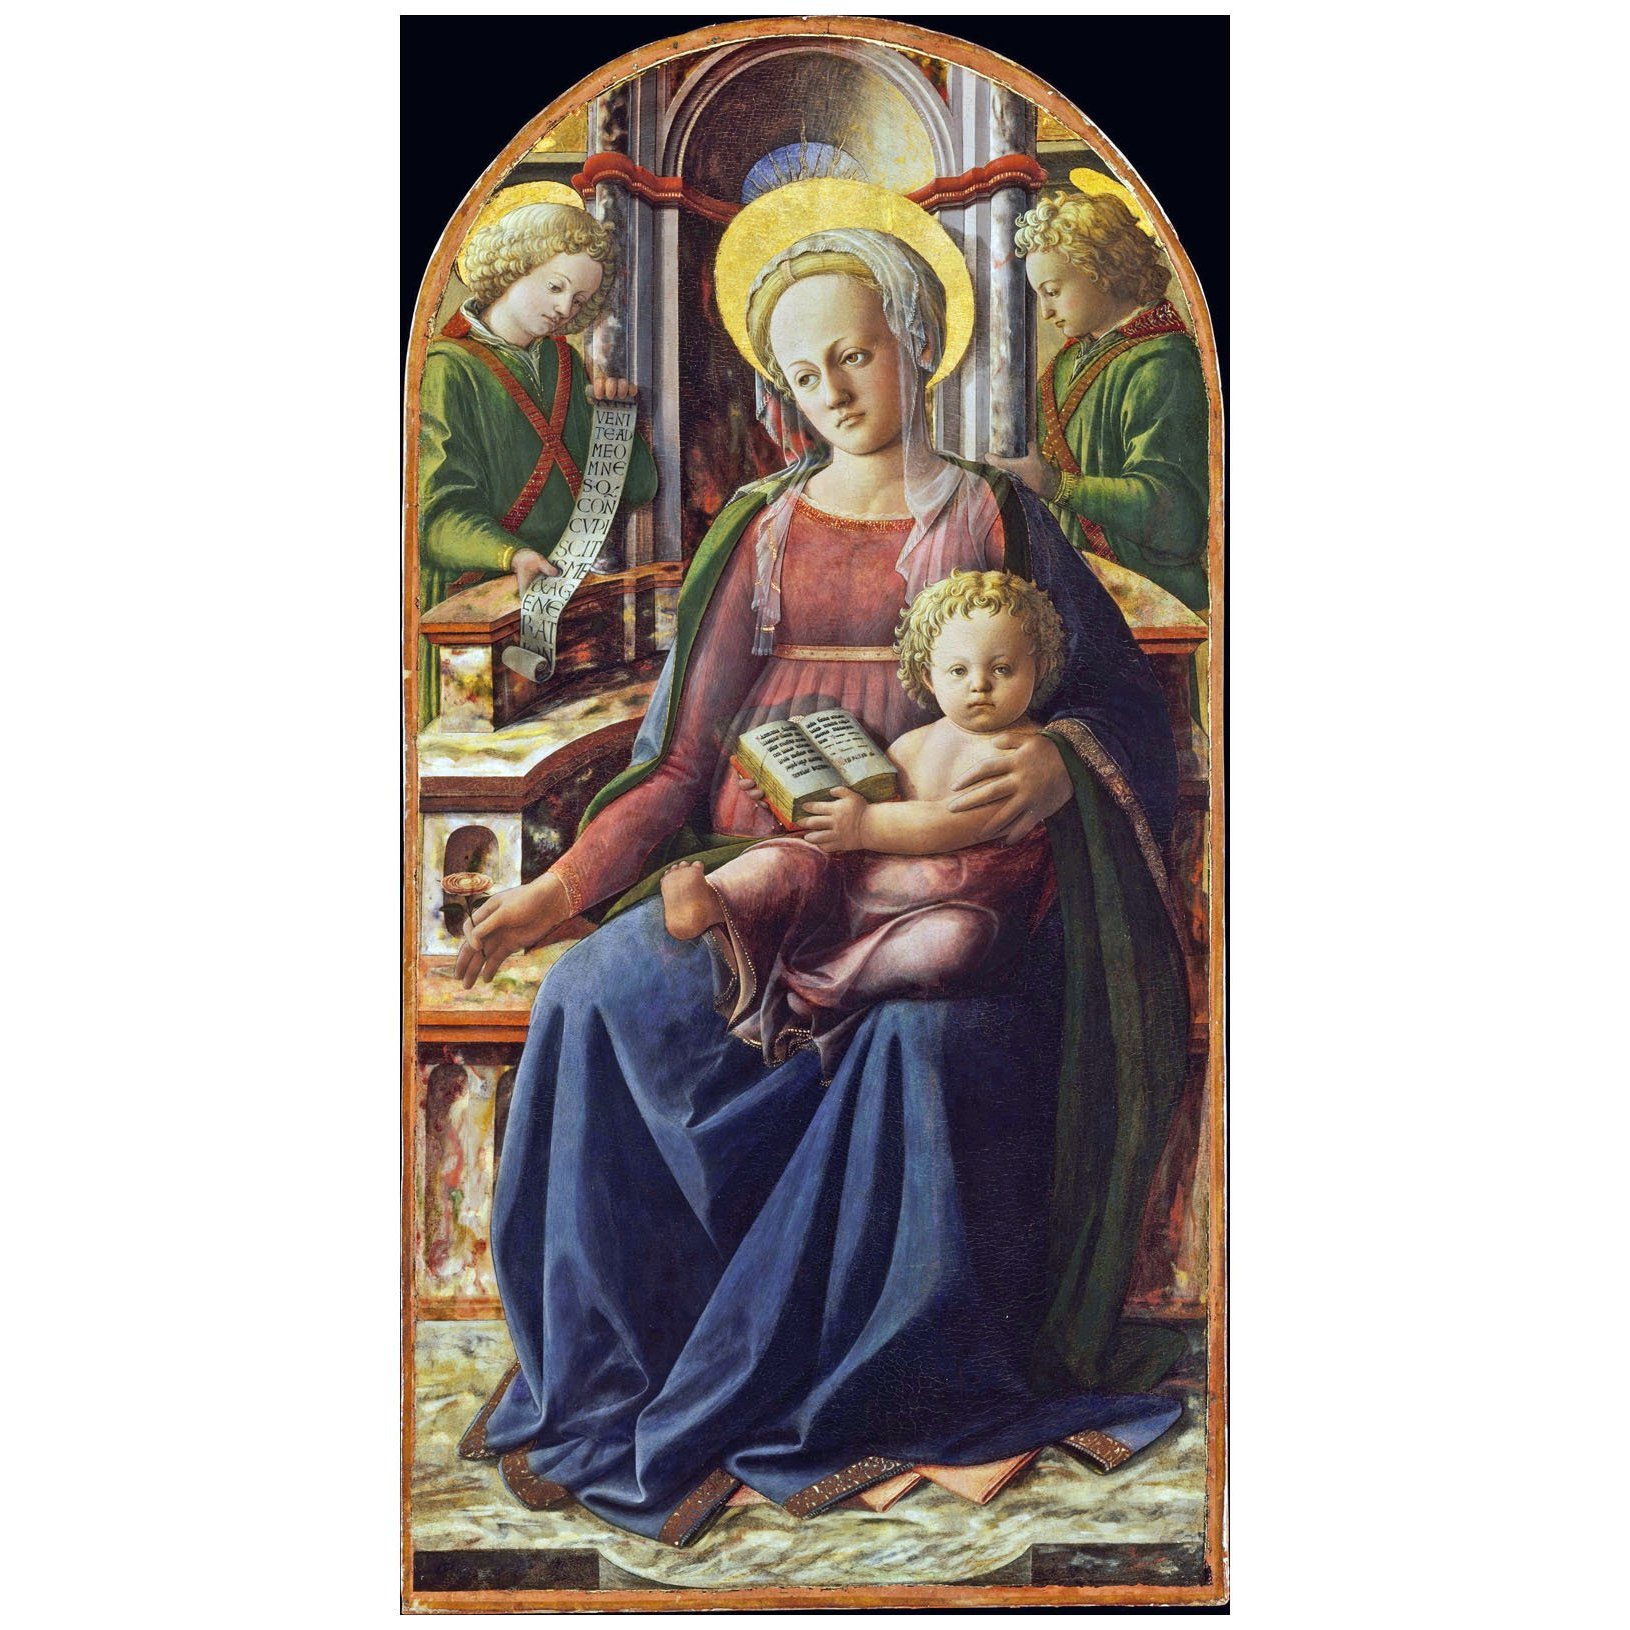 Fra Folippo Lippi. Madonna col bambino in trono. 1440. Metropolitan Museum NY